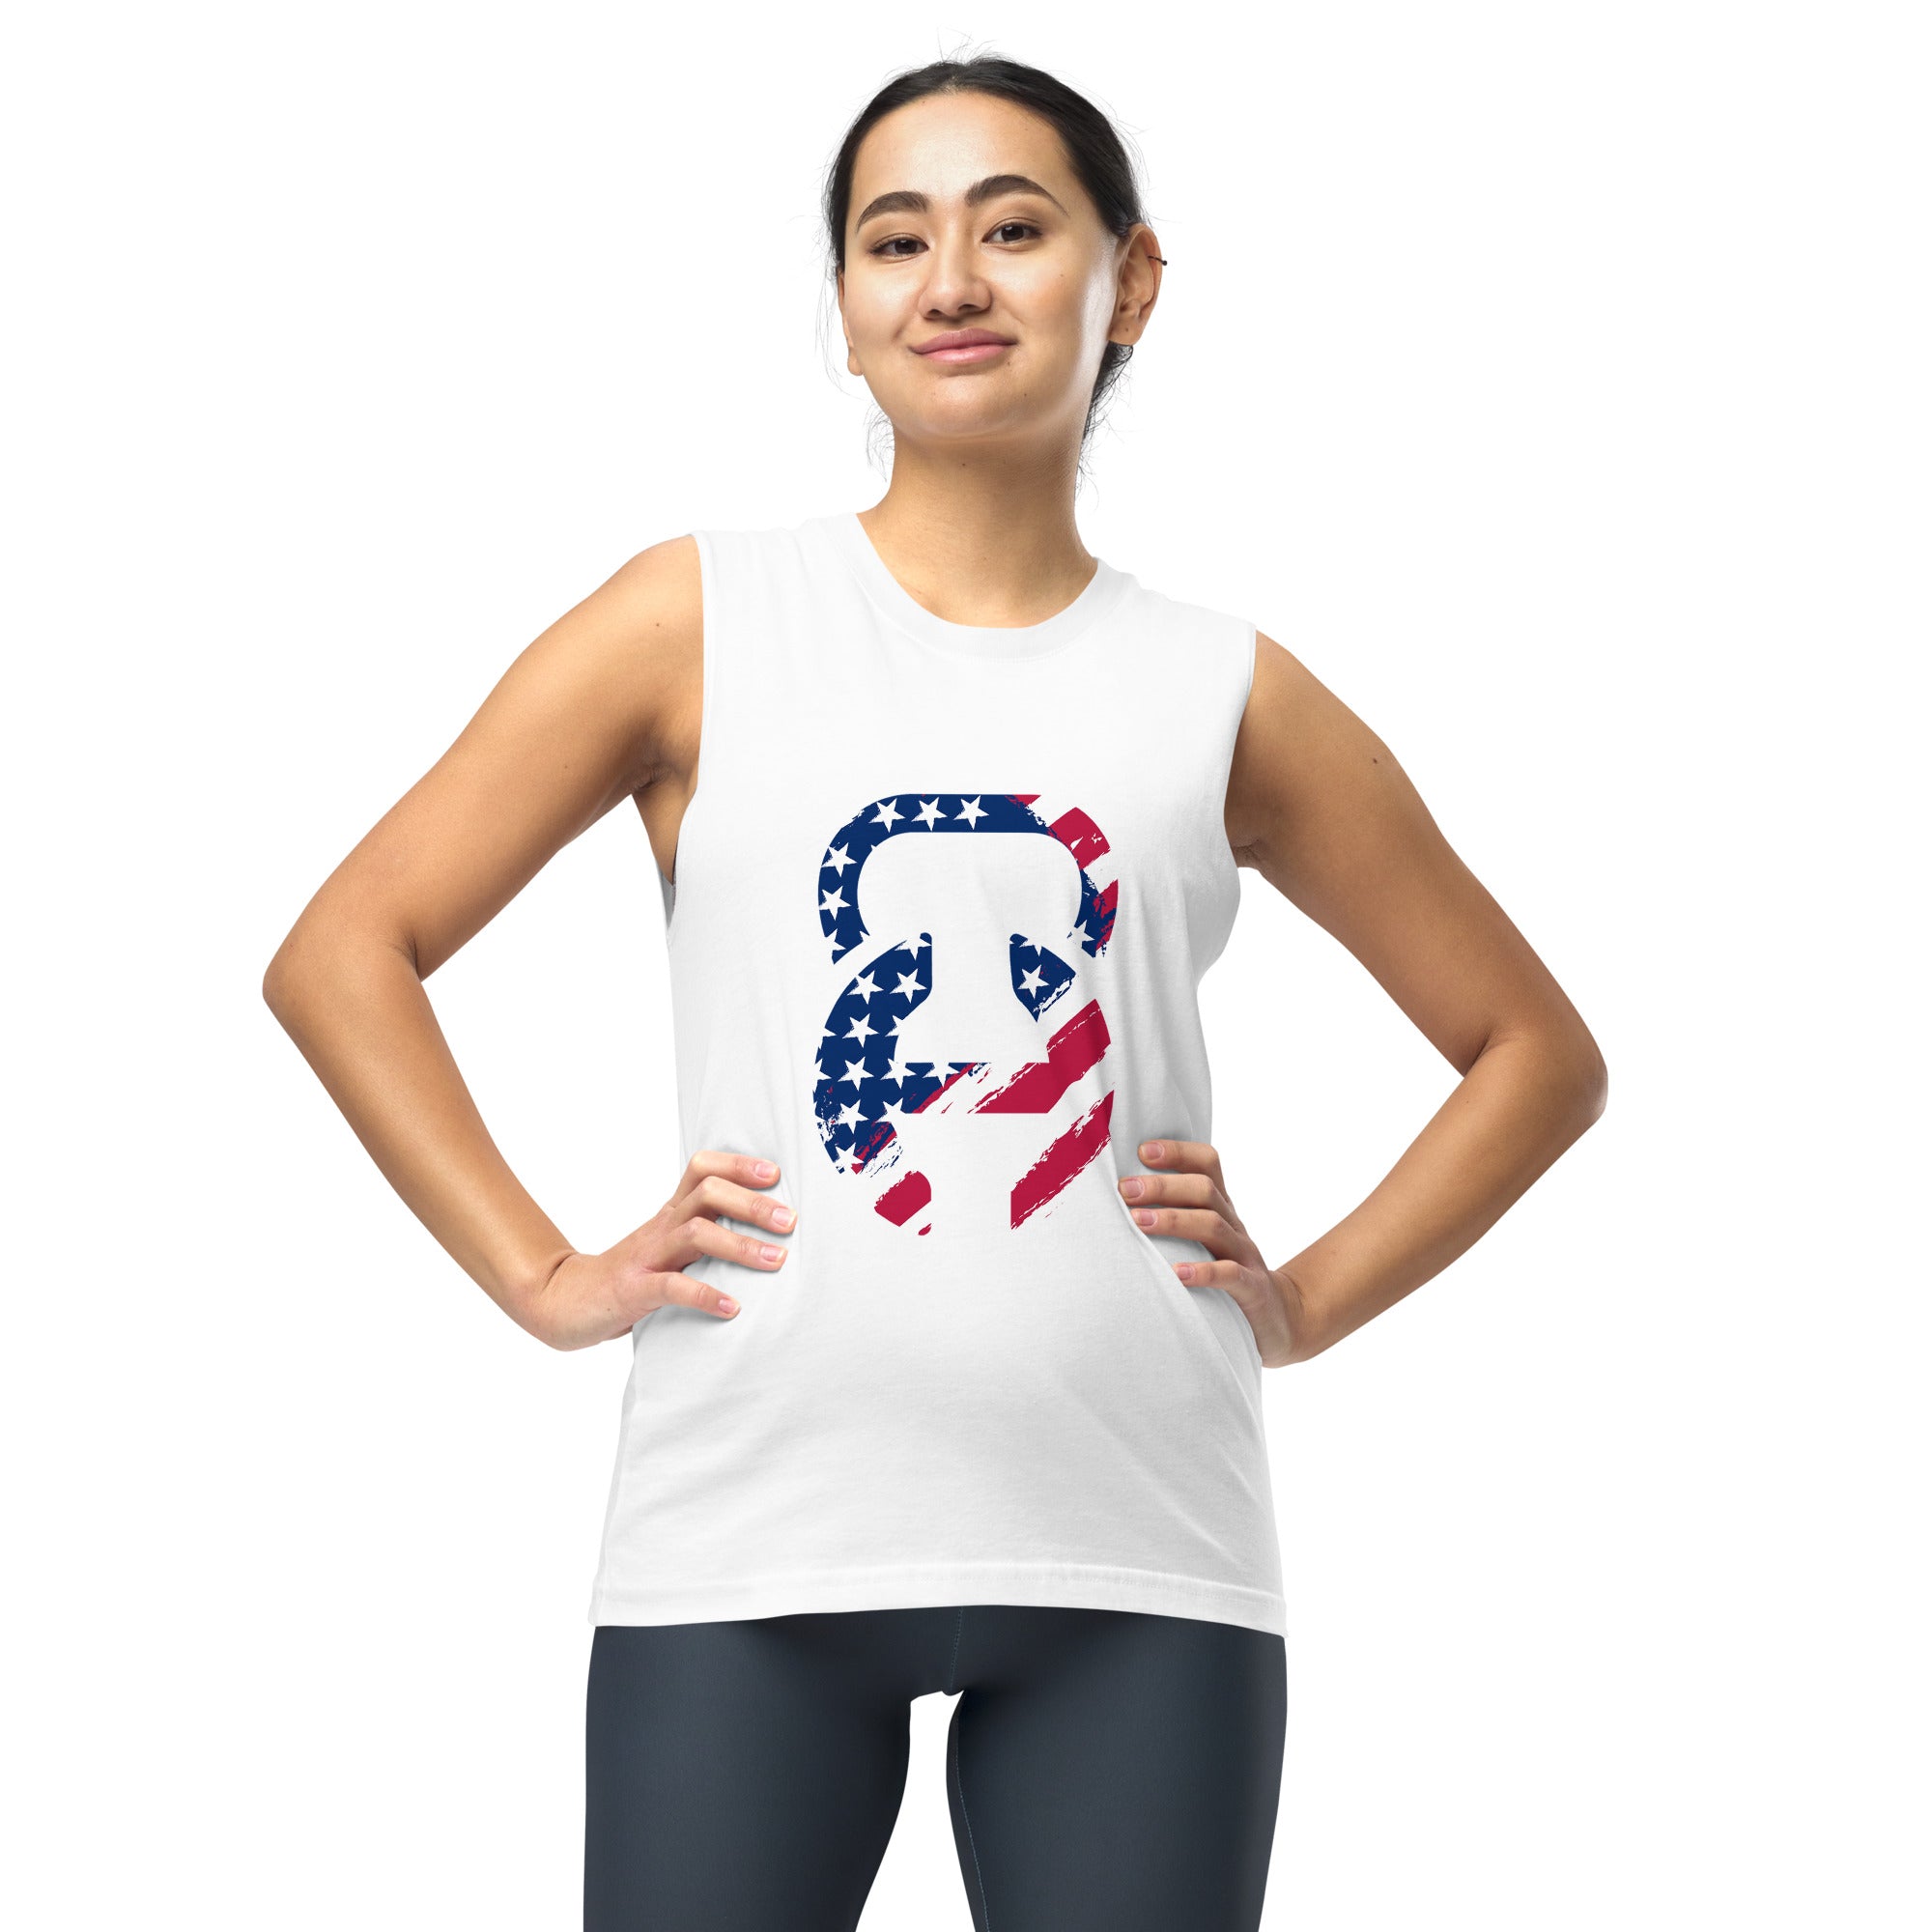 Freedom Unisex Muscle Shirt